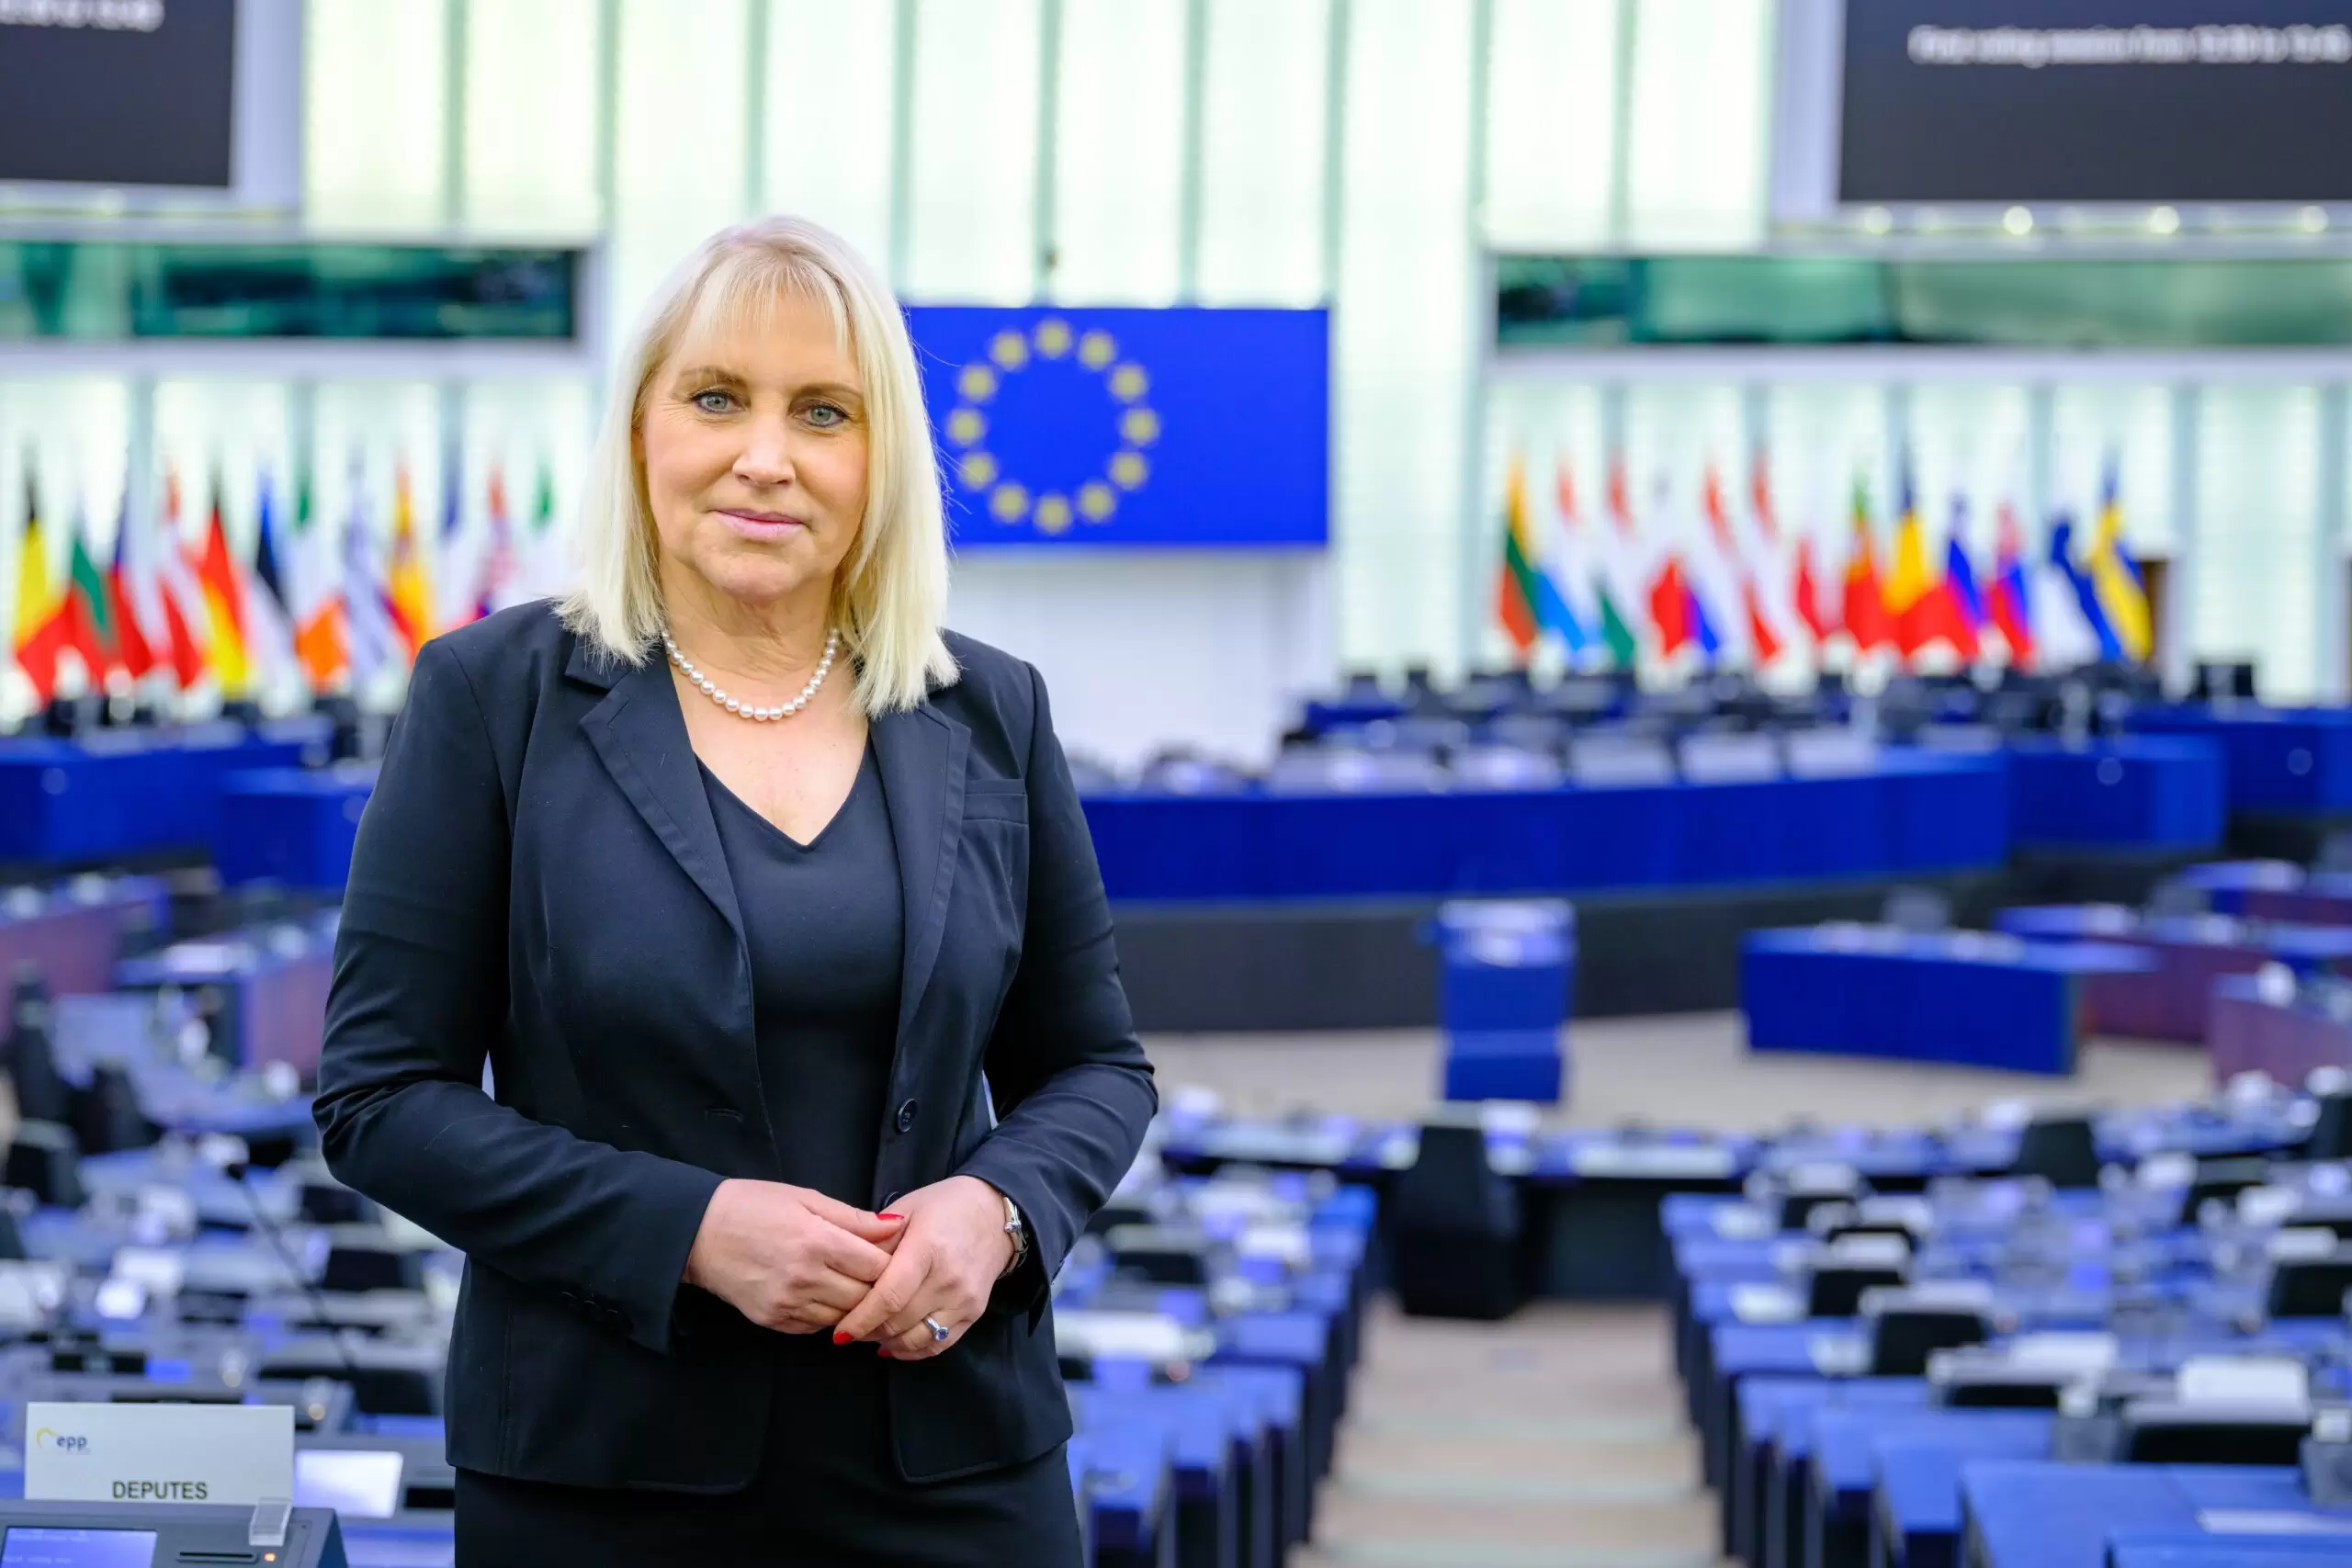 Angelika Winzig, Mitglied des Europäischen Parlaments und Leiterin der österreichischen EVP-Delegation, verlangt nach dem Korruptionsskandal unter Sozialdemokratien mehr Kontrollen und mehr Transparenz der EU-Förderungen an NGOs. Foto: EVP/Lahousse